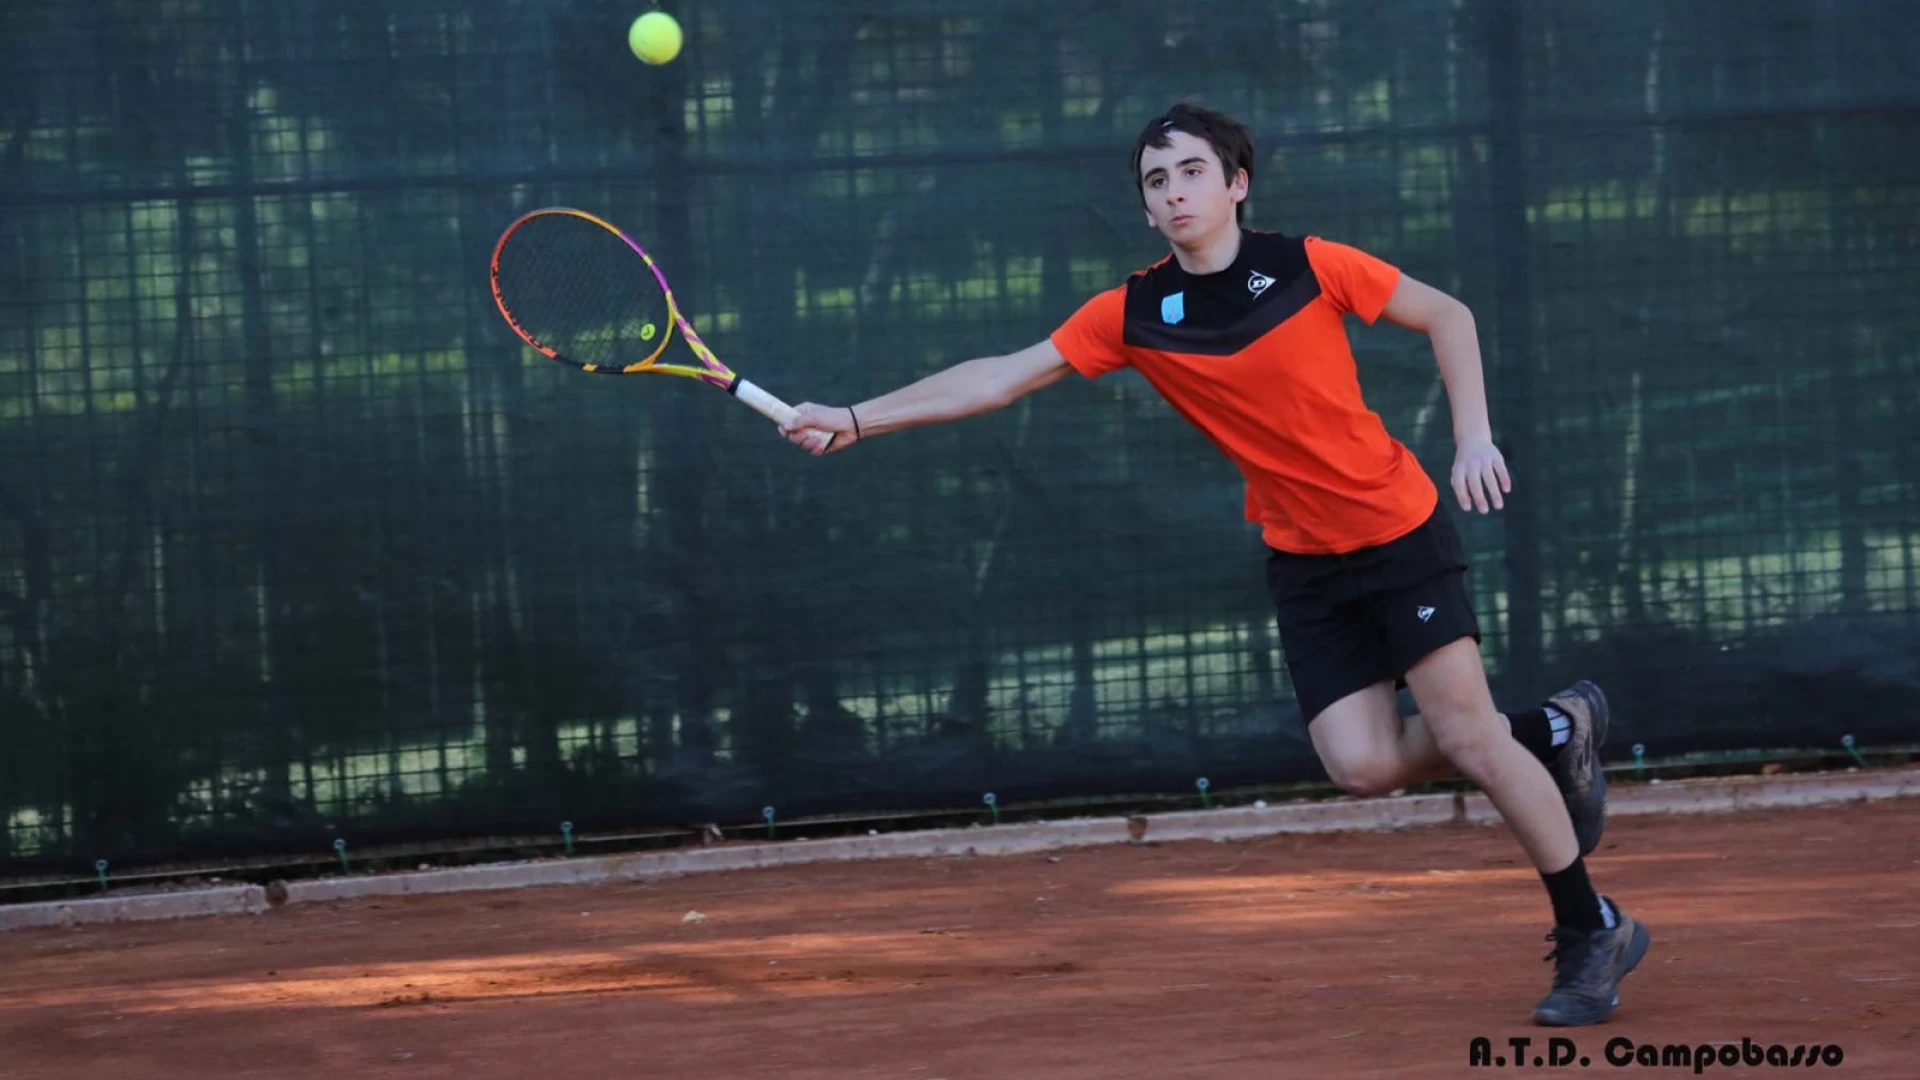 Tennis: continua il torneo Super Next Gen Italia 2022 a Campobasso